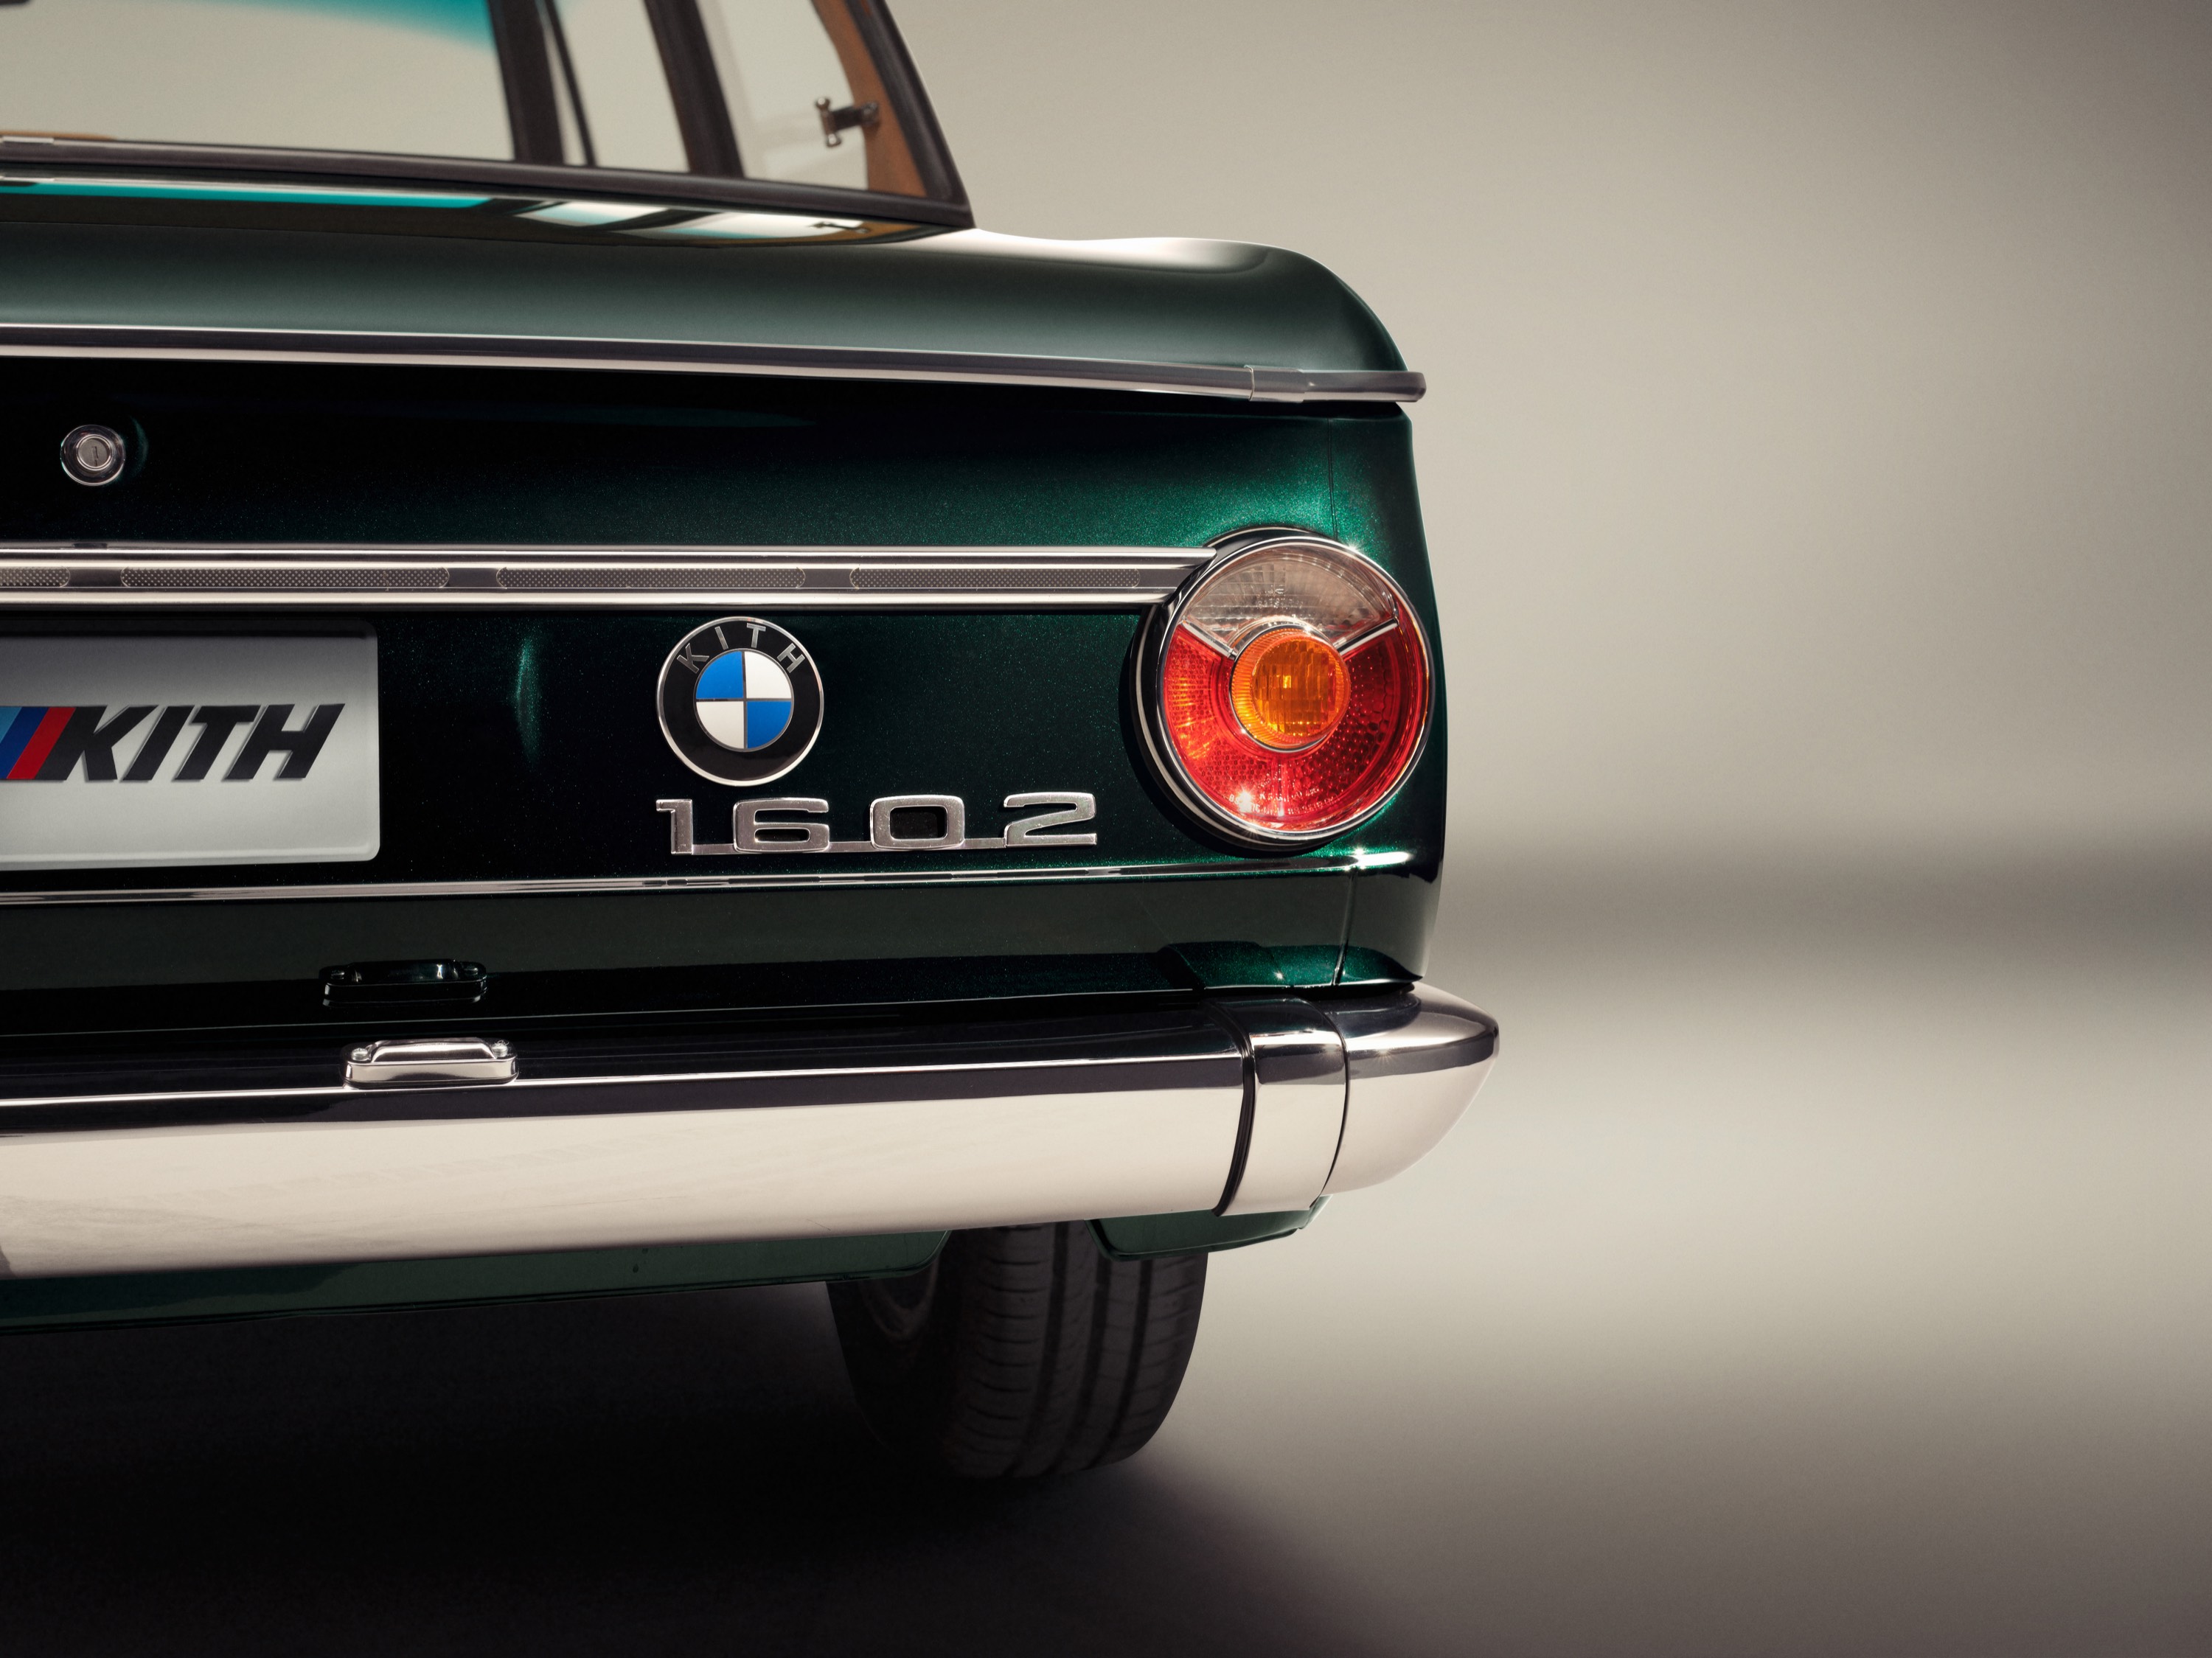 BMW 1602 Elektro by Ronnie Fieg